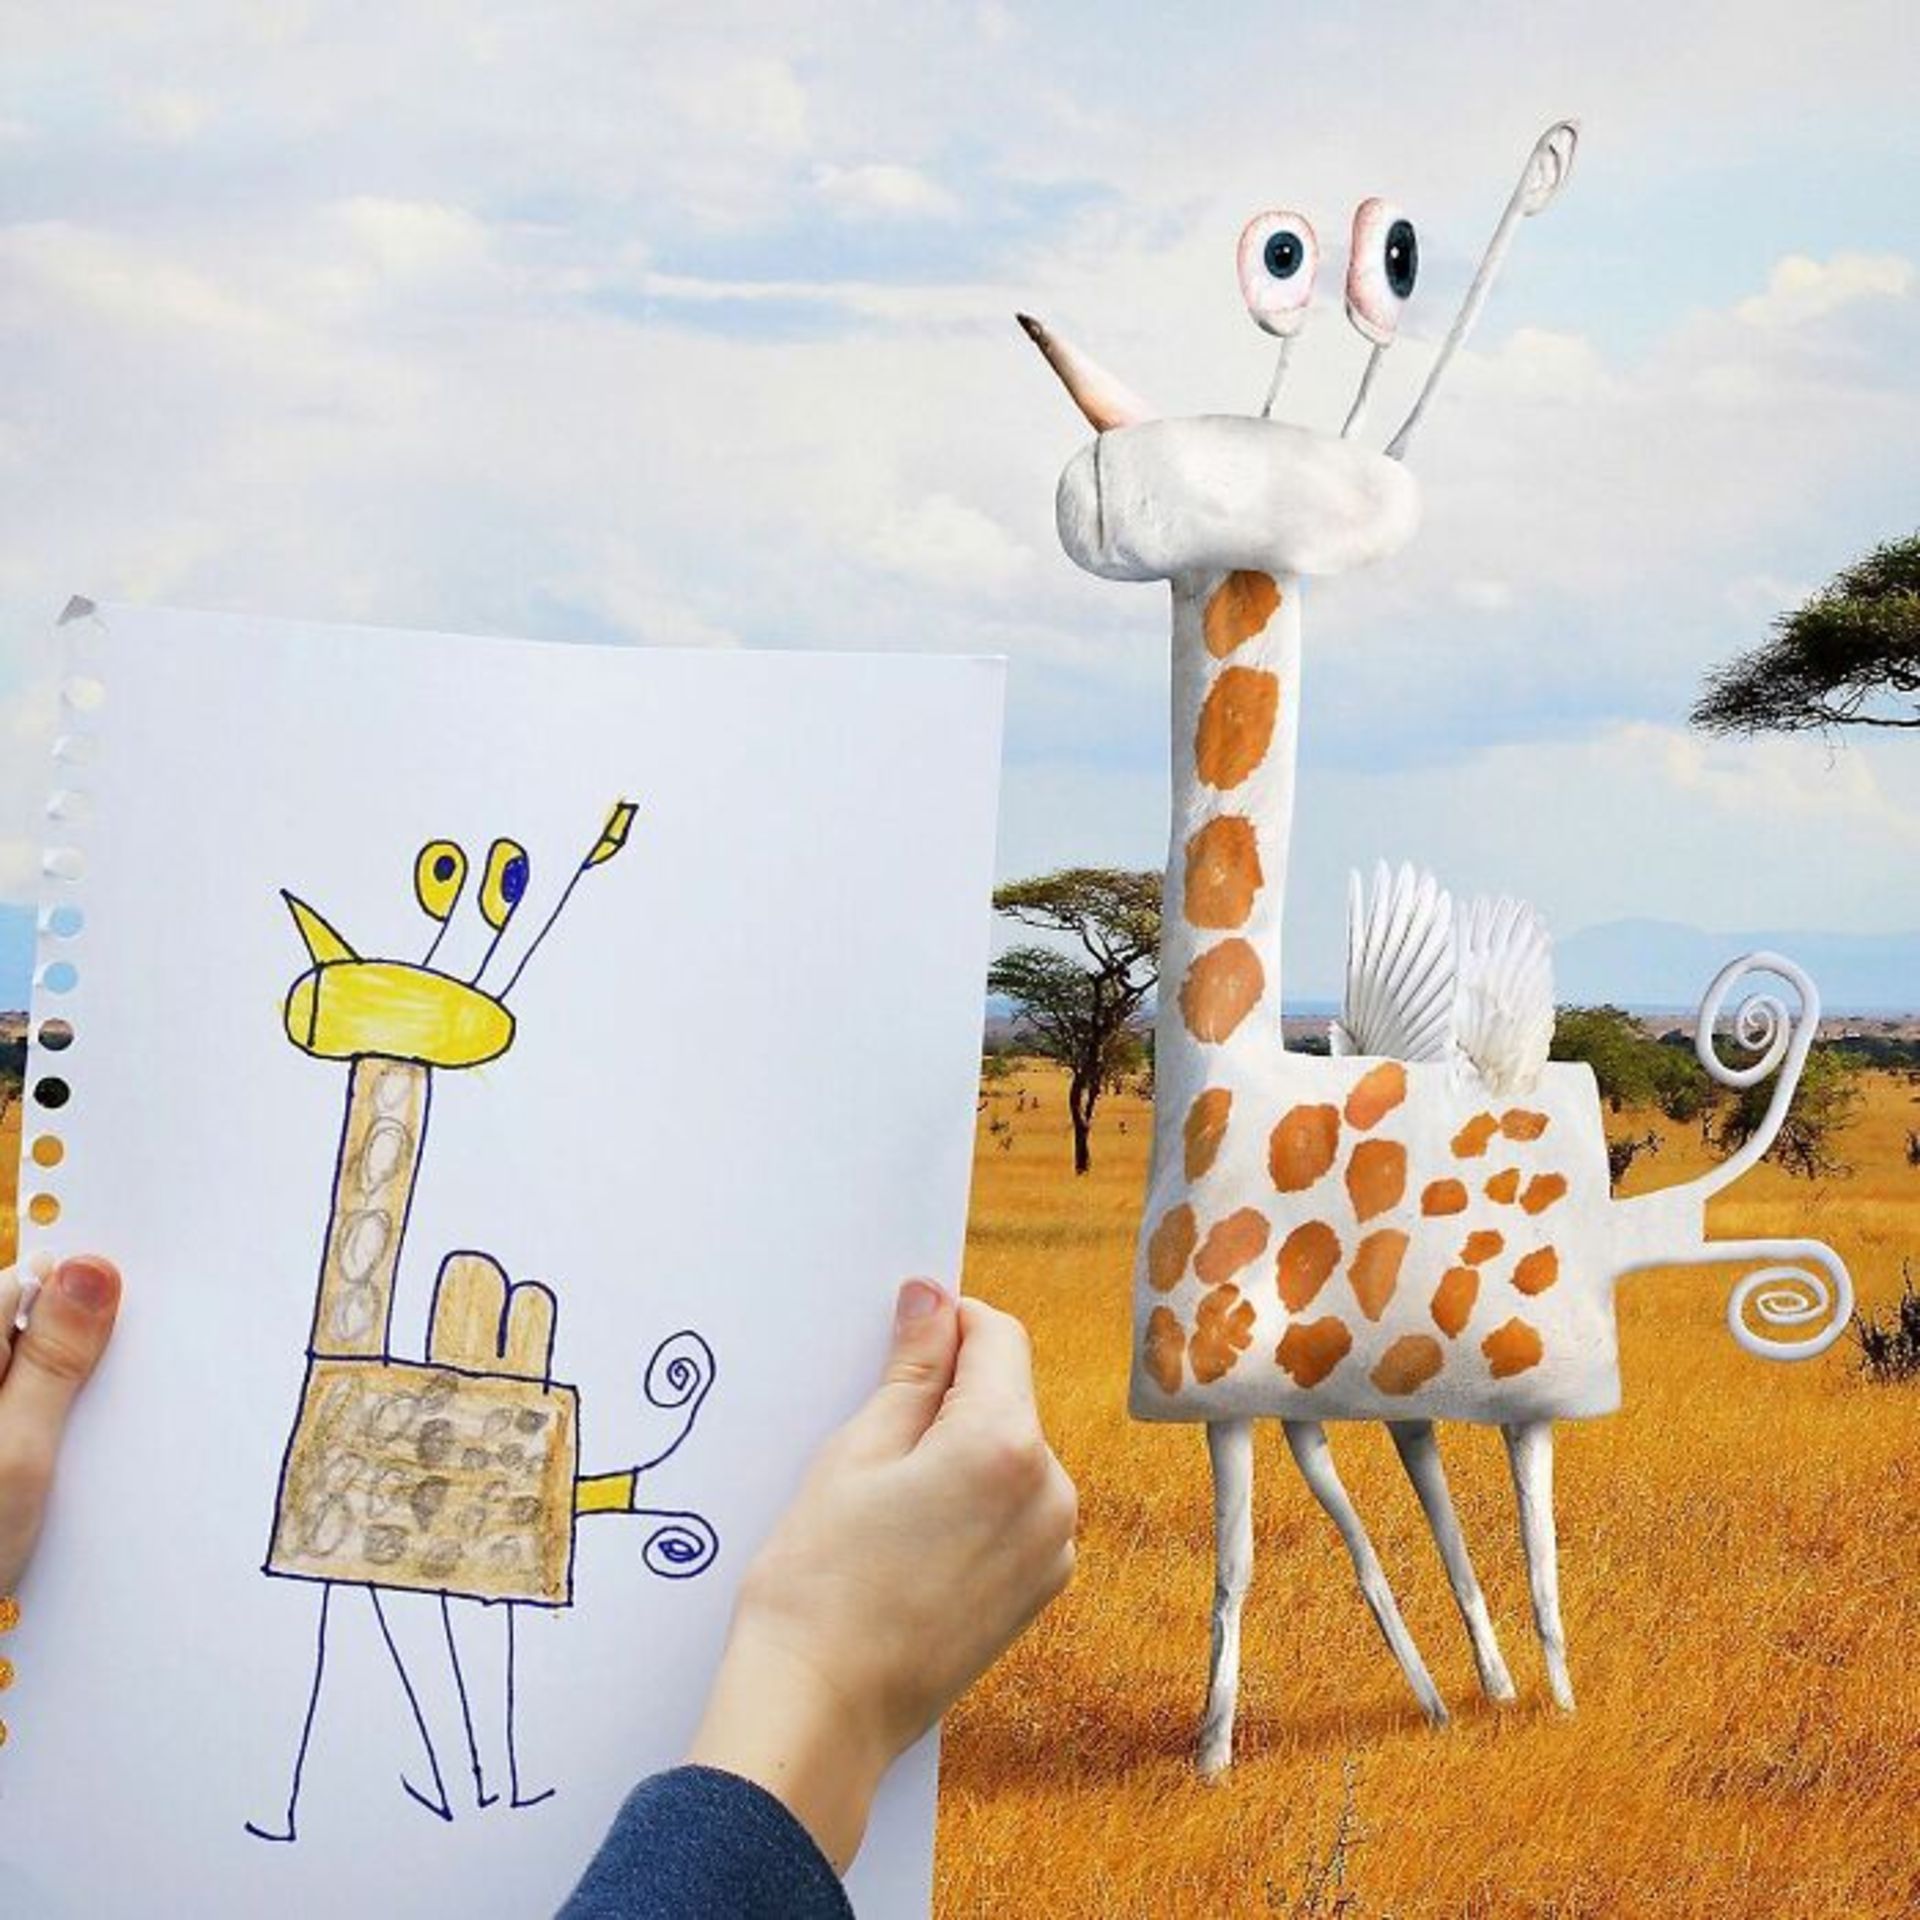 زنده کردن نقاشی کودکان با فتوشاپ - زرافه